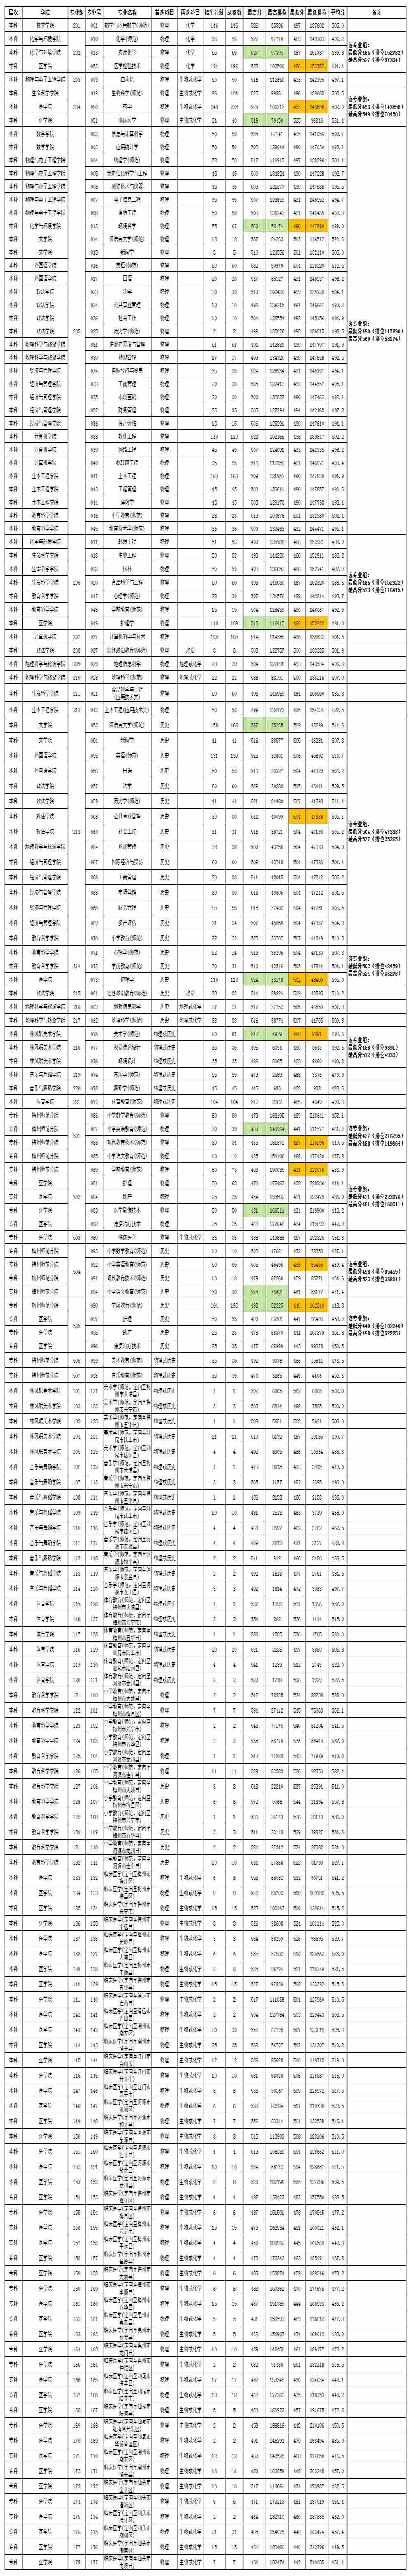 嘉应学院2021年各专业录取情况统计表（广东省）.jpg